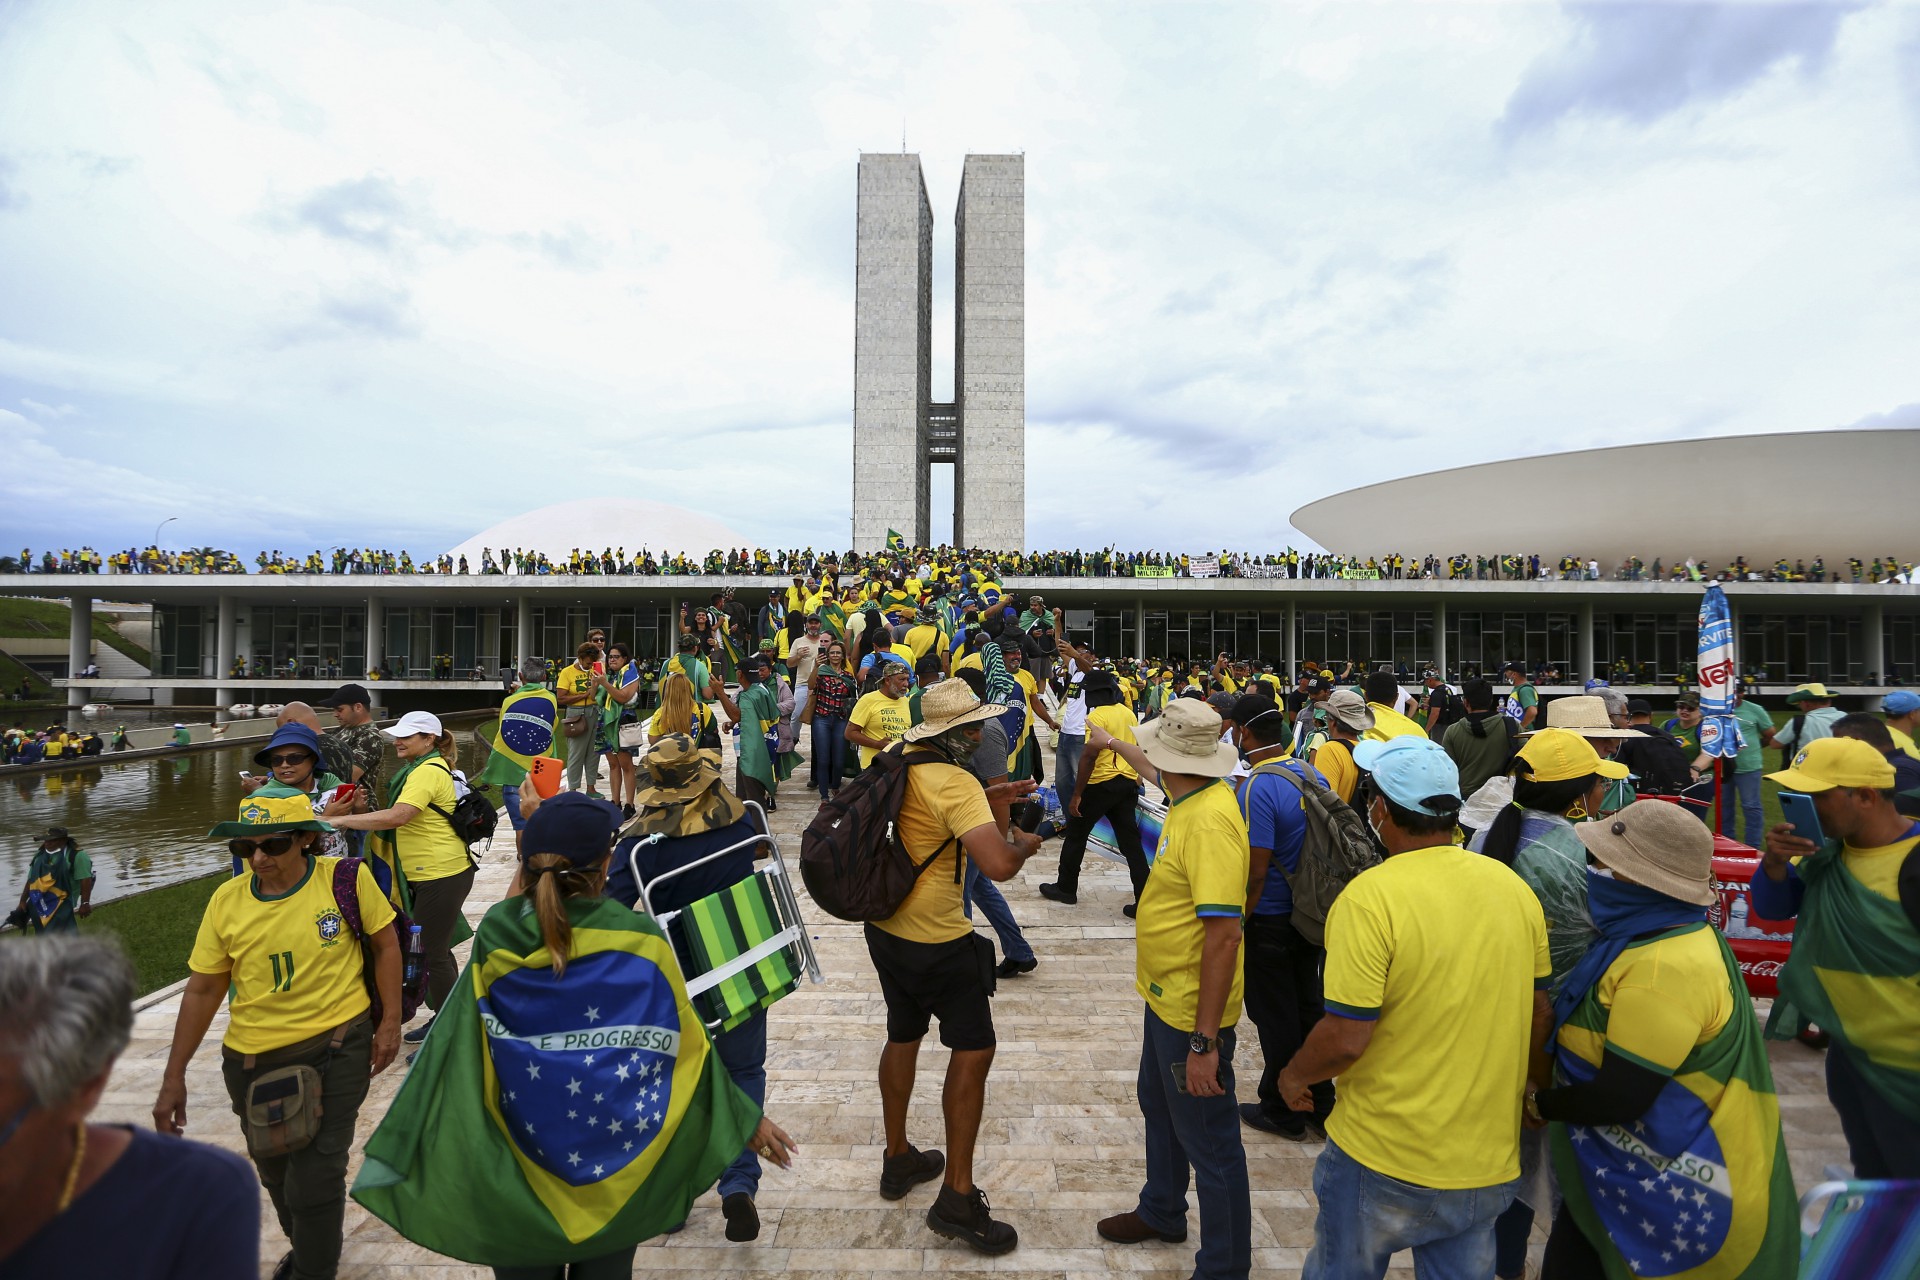 Manifestantes invadem Congresso, STF e Palácio do Planalto. (Foto: Marcelo Camargo/Agência Brasil
)